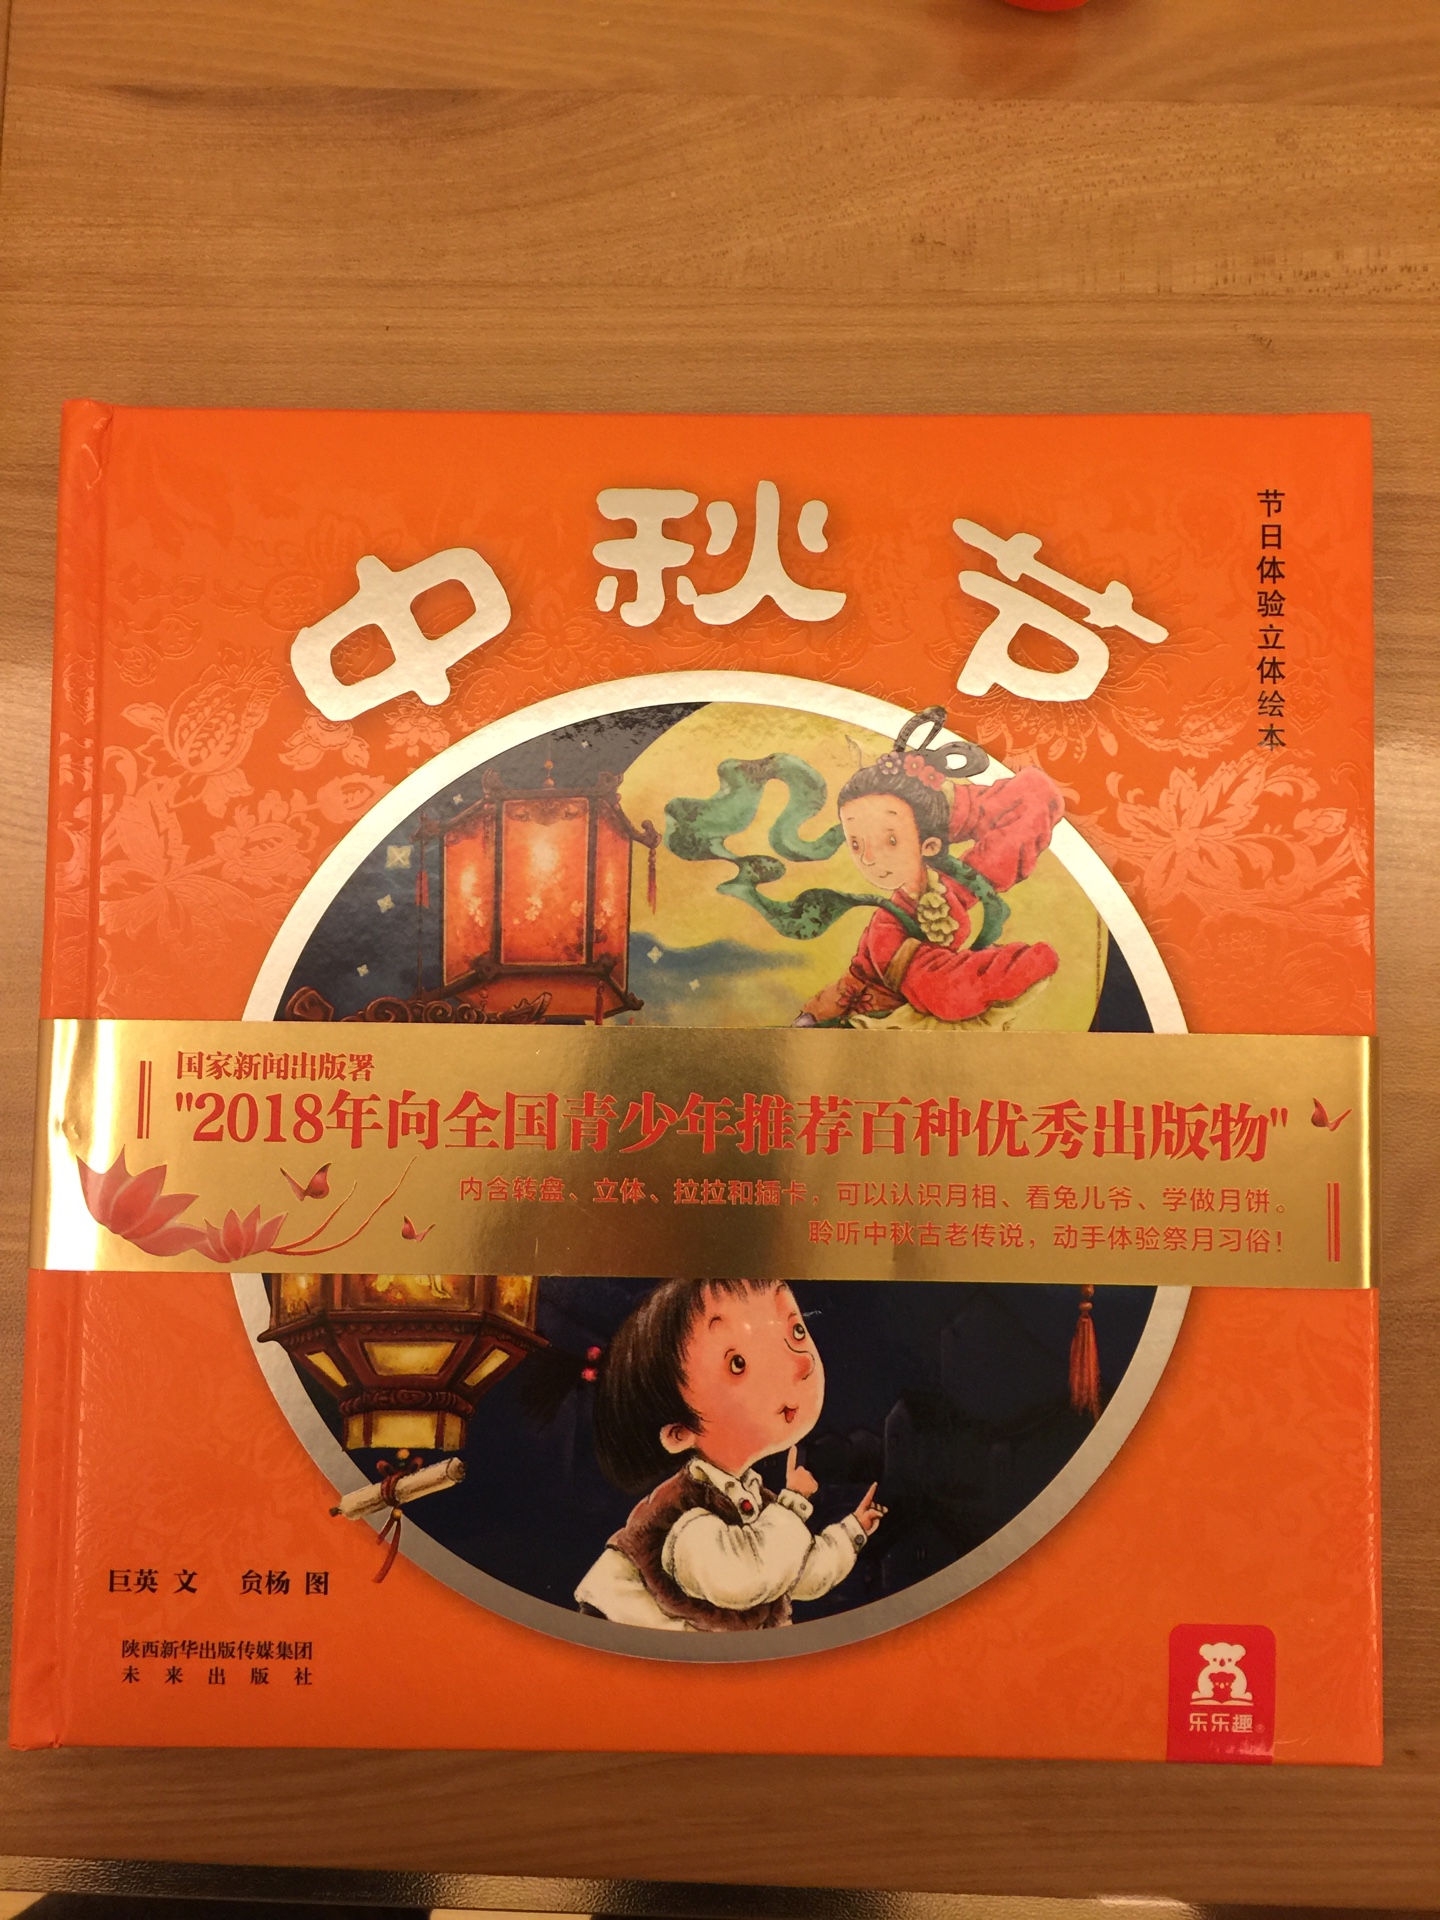 乐乐趣的书真心不错，特别是讲中国节日的几本，特地买了过年啦，中秋节，给孩子讲解中国的节日，书里的内容又有趣，又形象，真的是不错，书的质量也很好